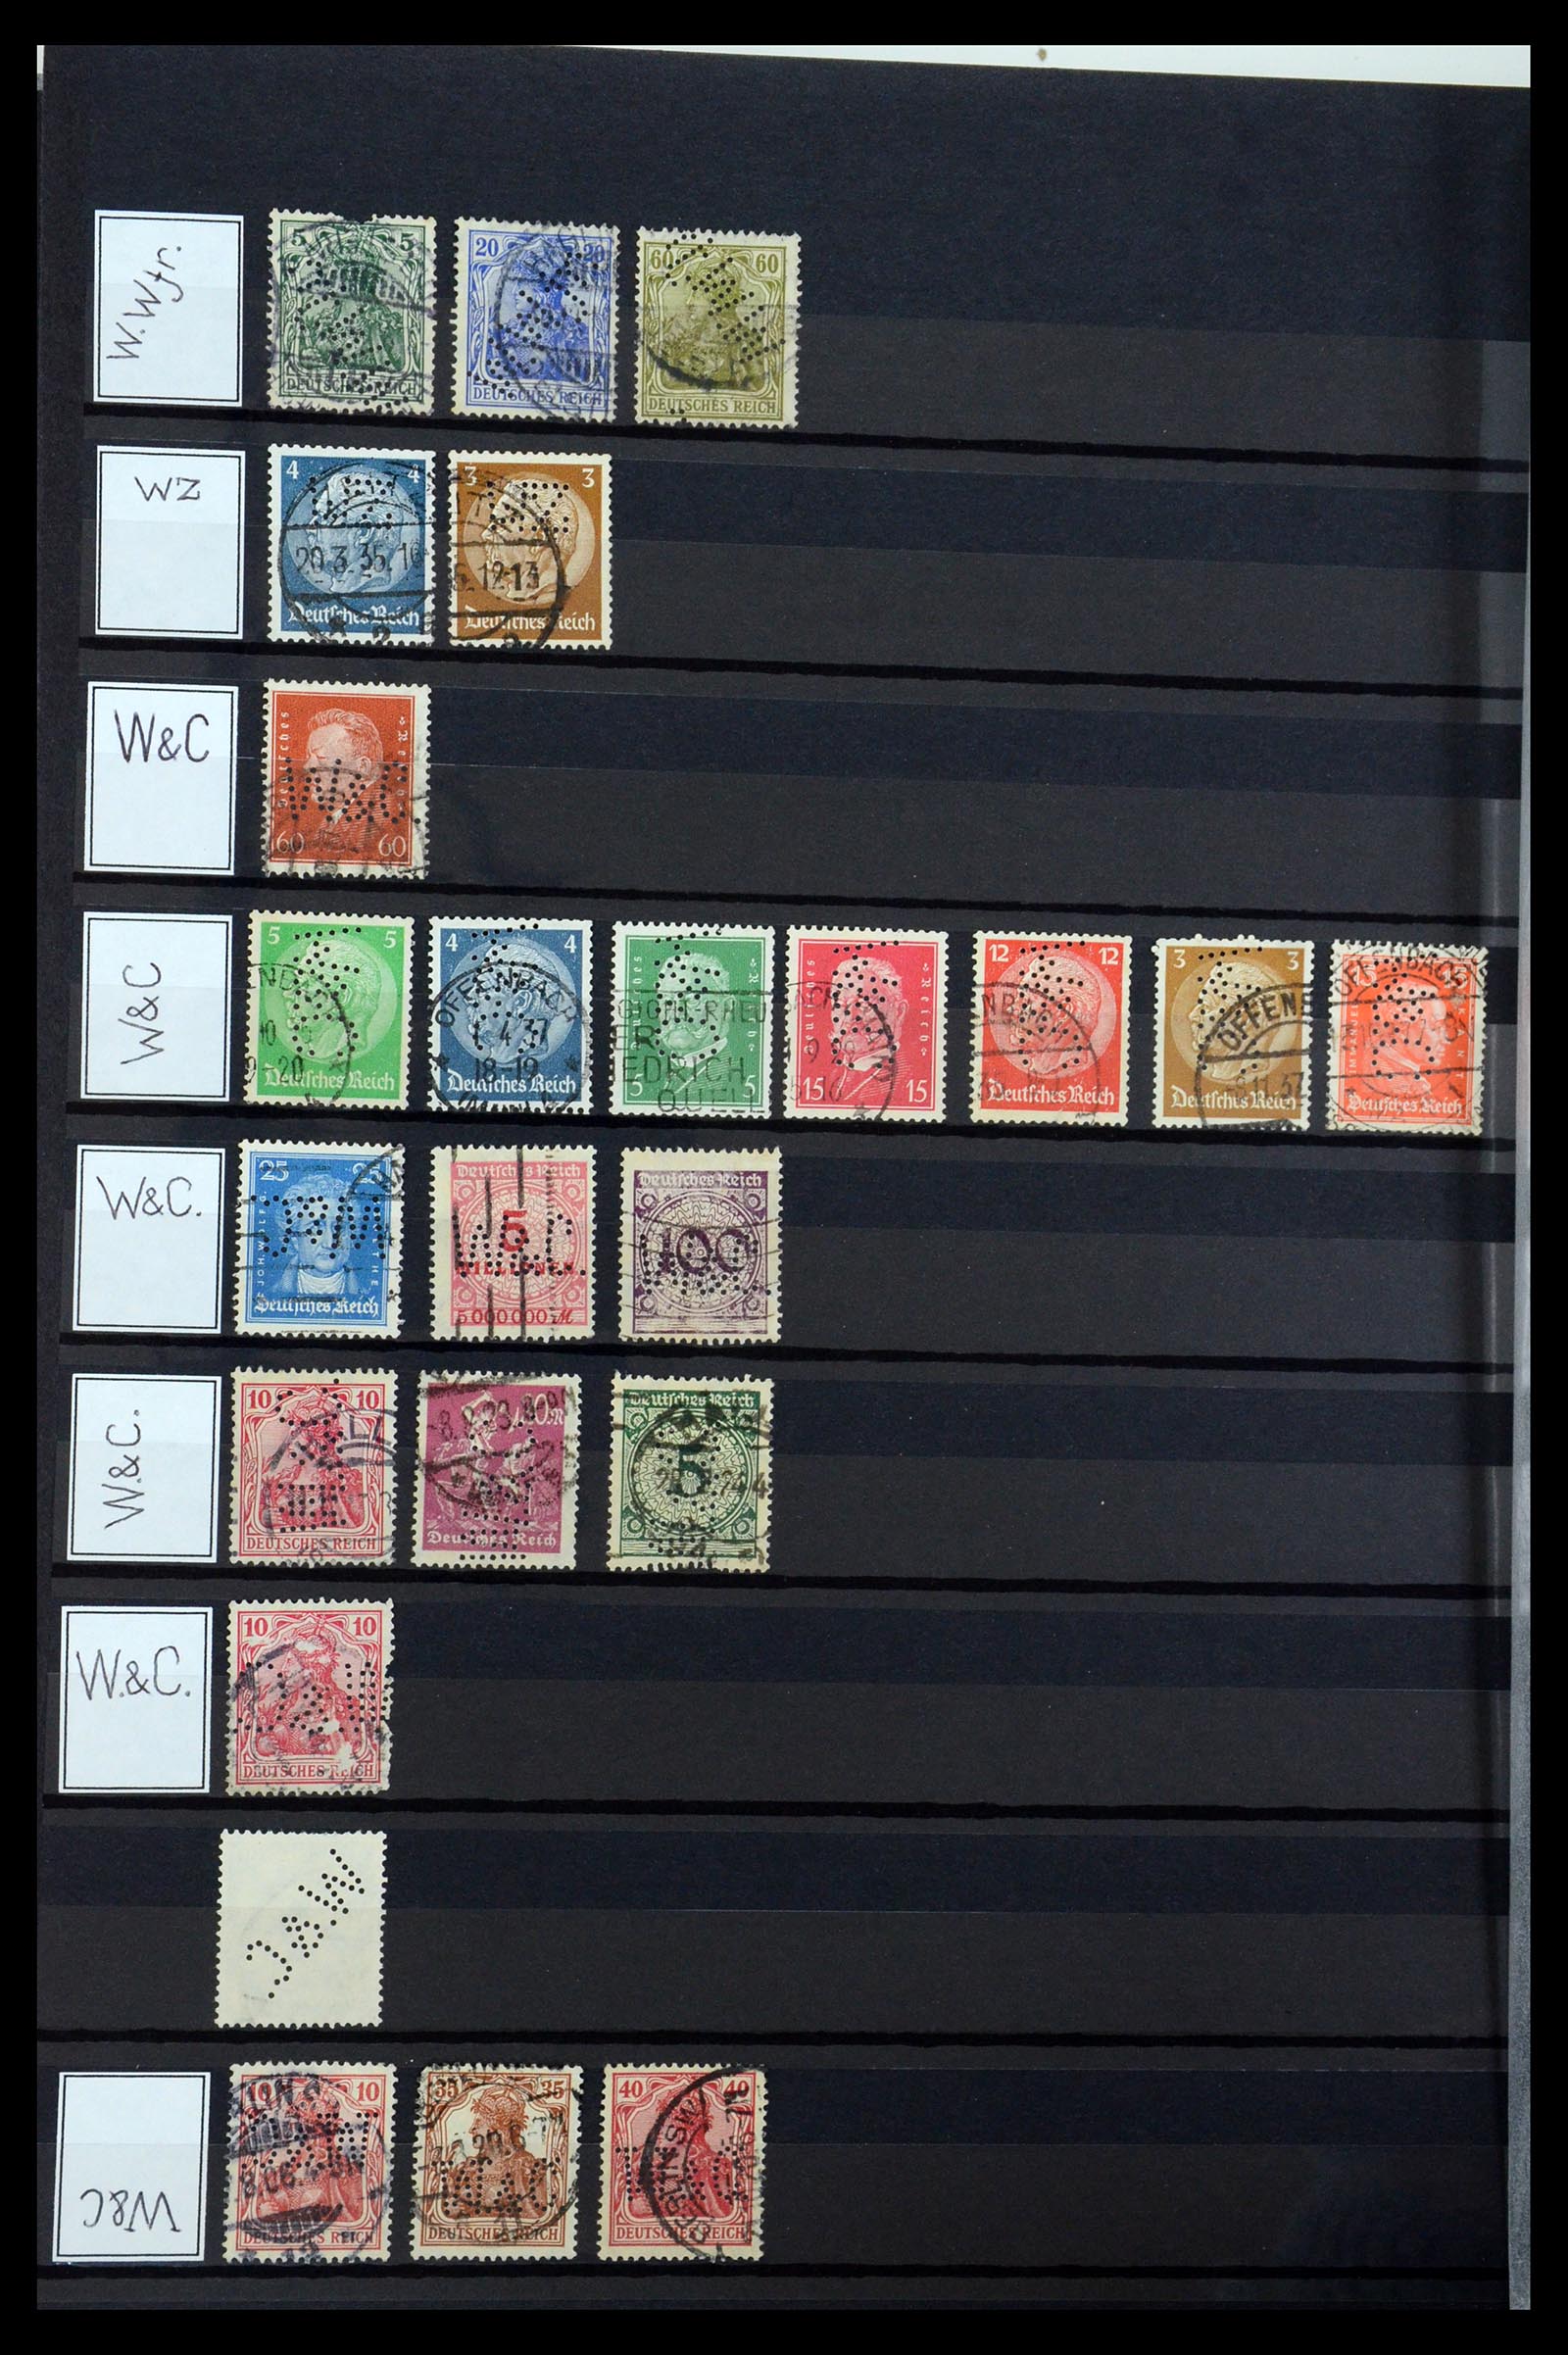 36405 346 - Stamp collection 36405 German Reich perfins 1880-1945.